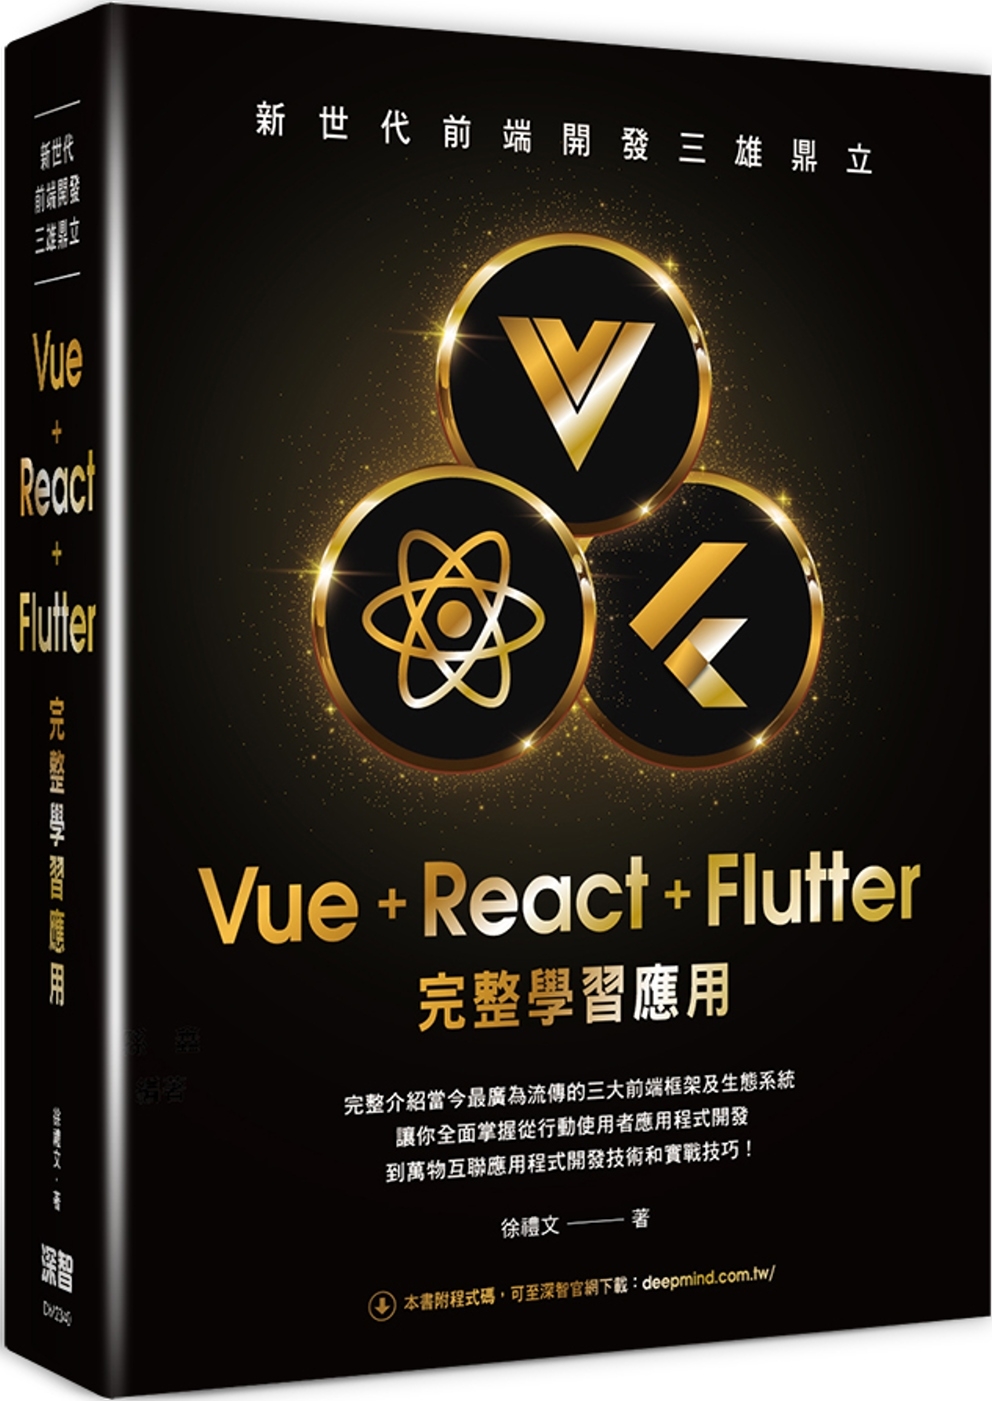 新世代前端開發三雄鼎立 - Vue+React+Flutte...